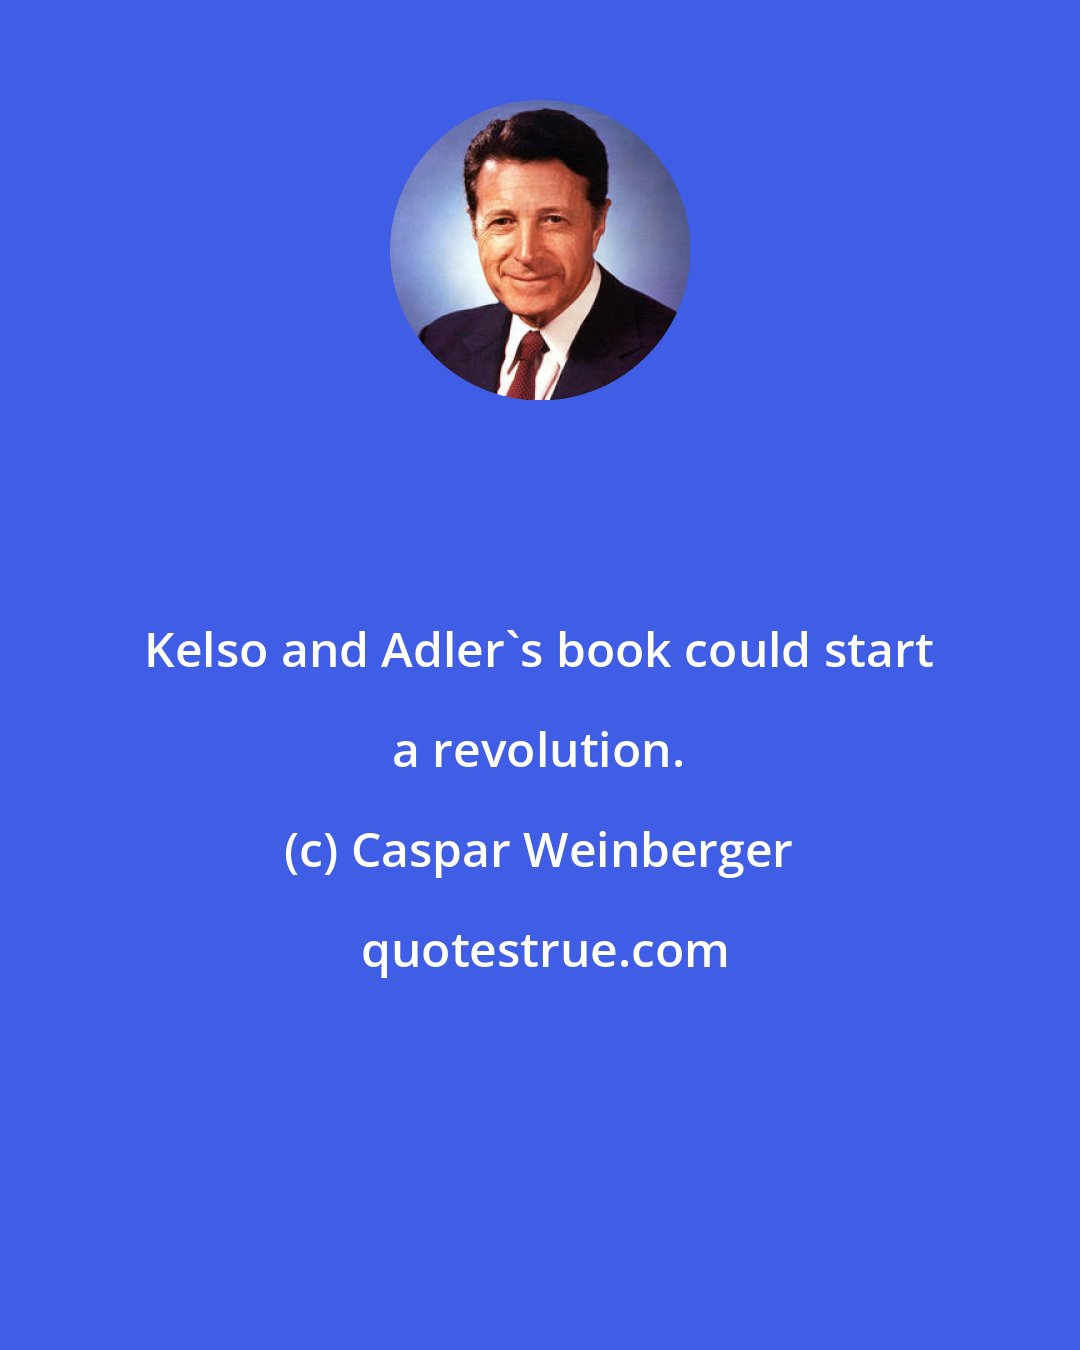 Caspar Weinberger: Kelso and Adler's book could start a revolution.